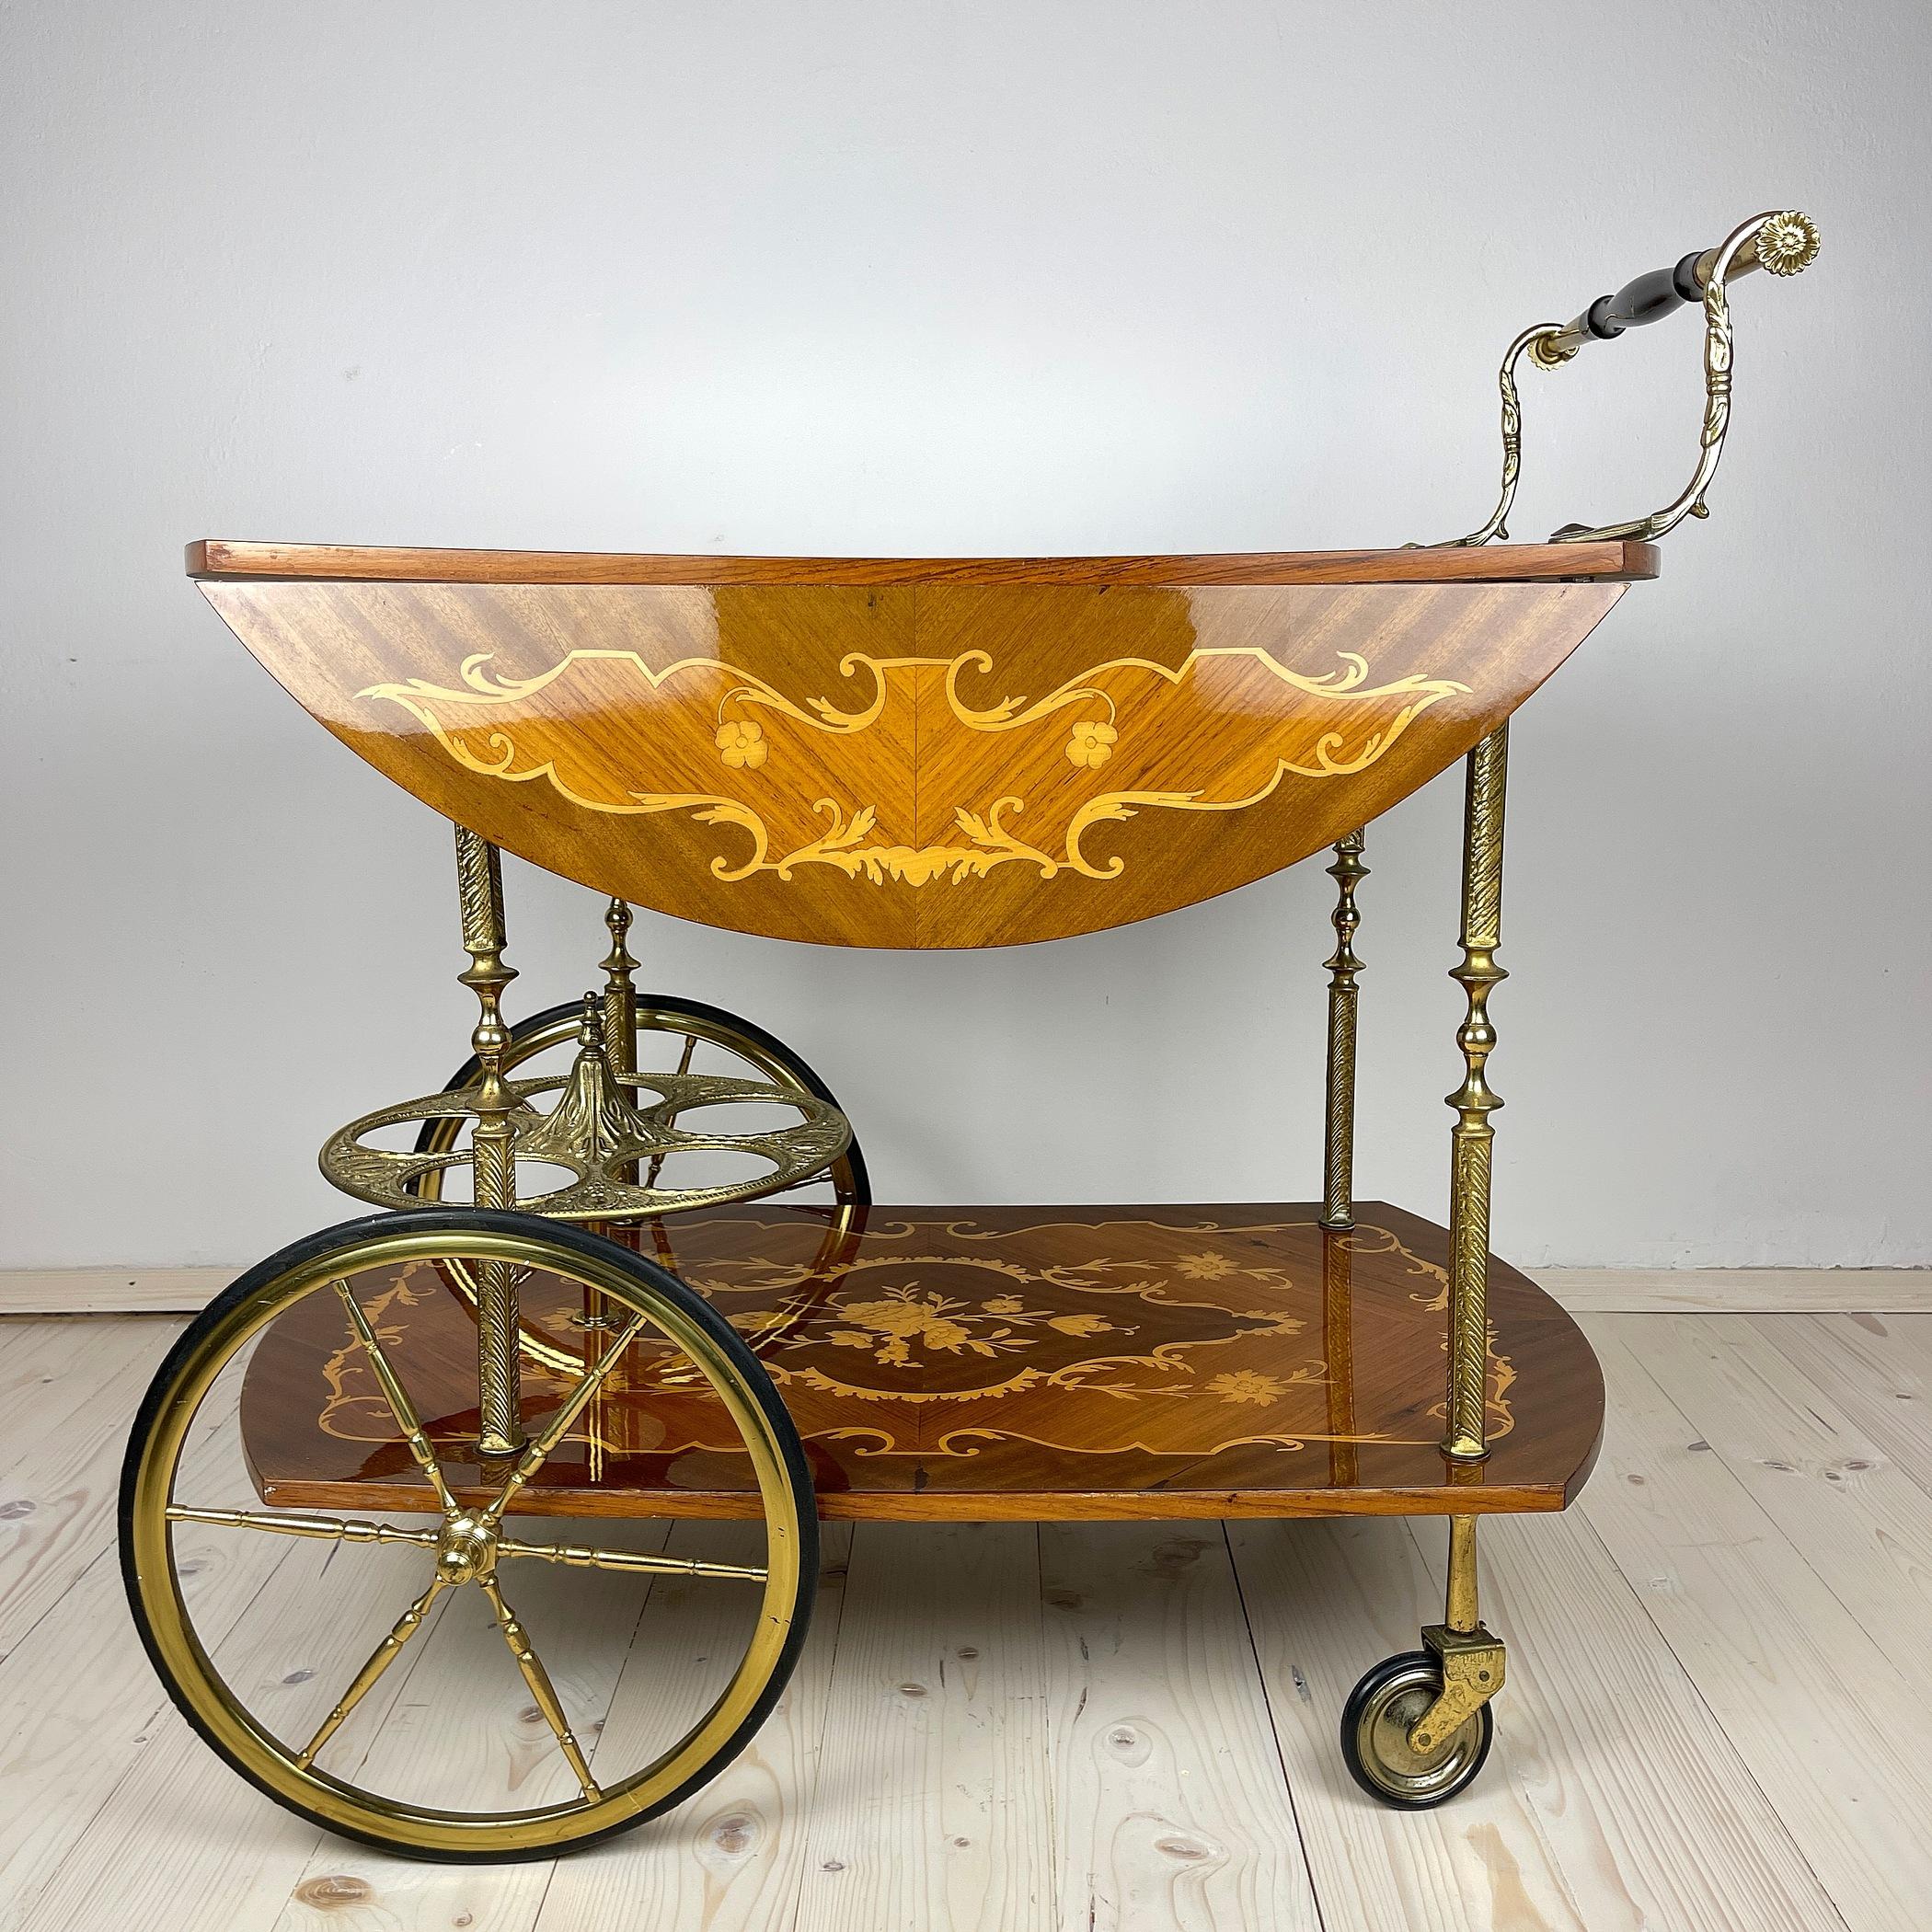 Chariot de bar italien vintage avec marqueterie sur 4 roues. Ce chariot de bar à cocktails a été fabriqué en Italie dans le style Hollywood Regency des années 1950. Grâce au travail du bois orné, le chariot est un véritable objet d'artisanat. Il est